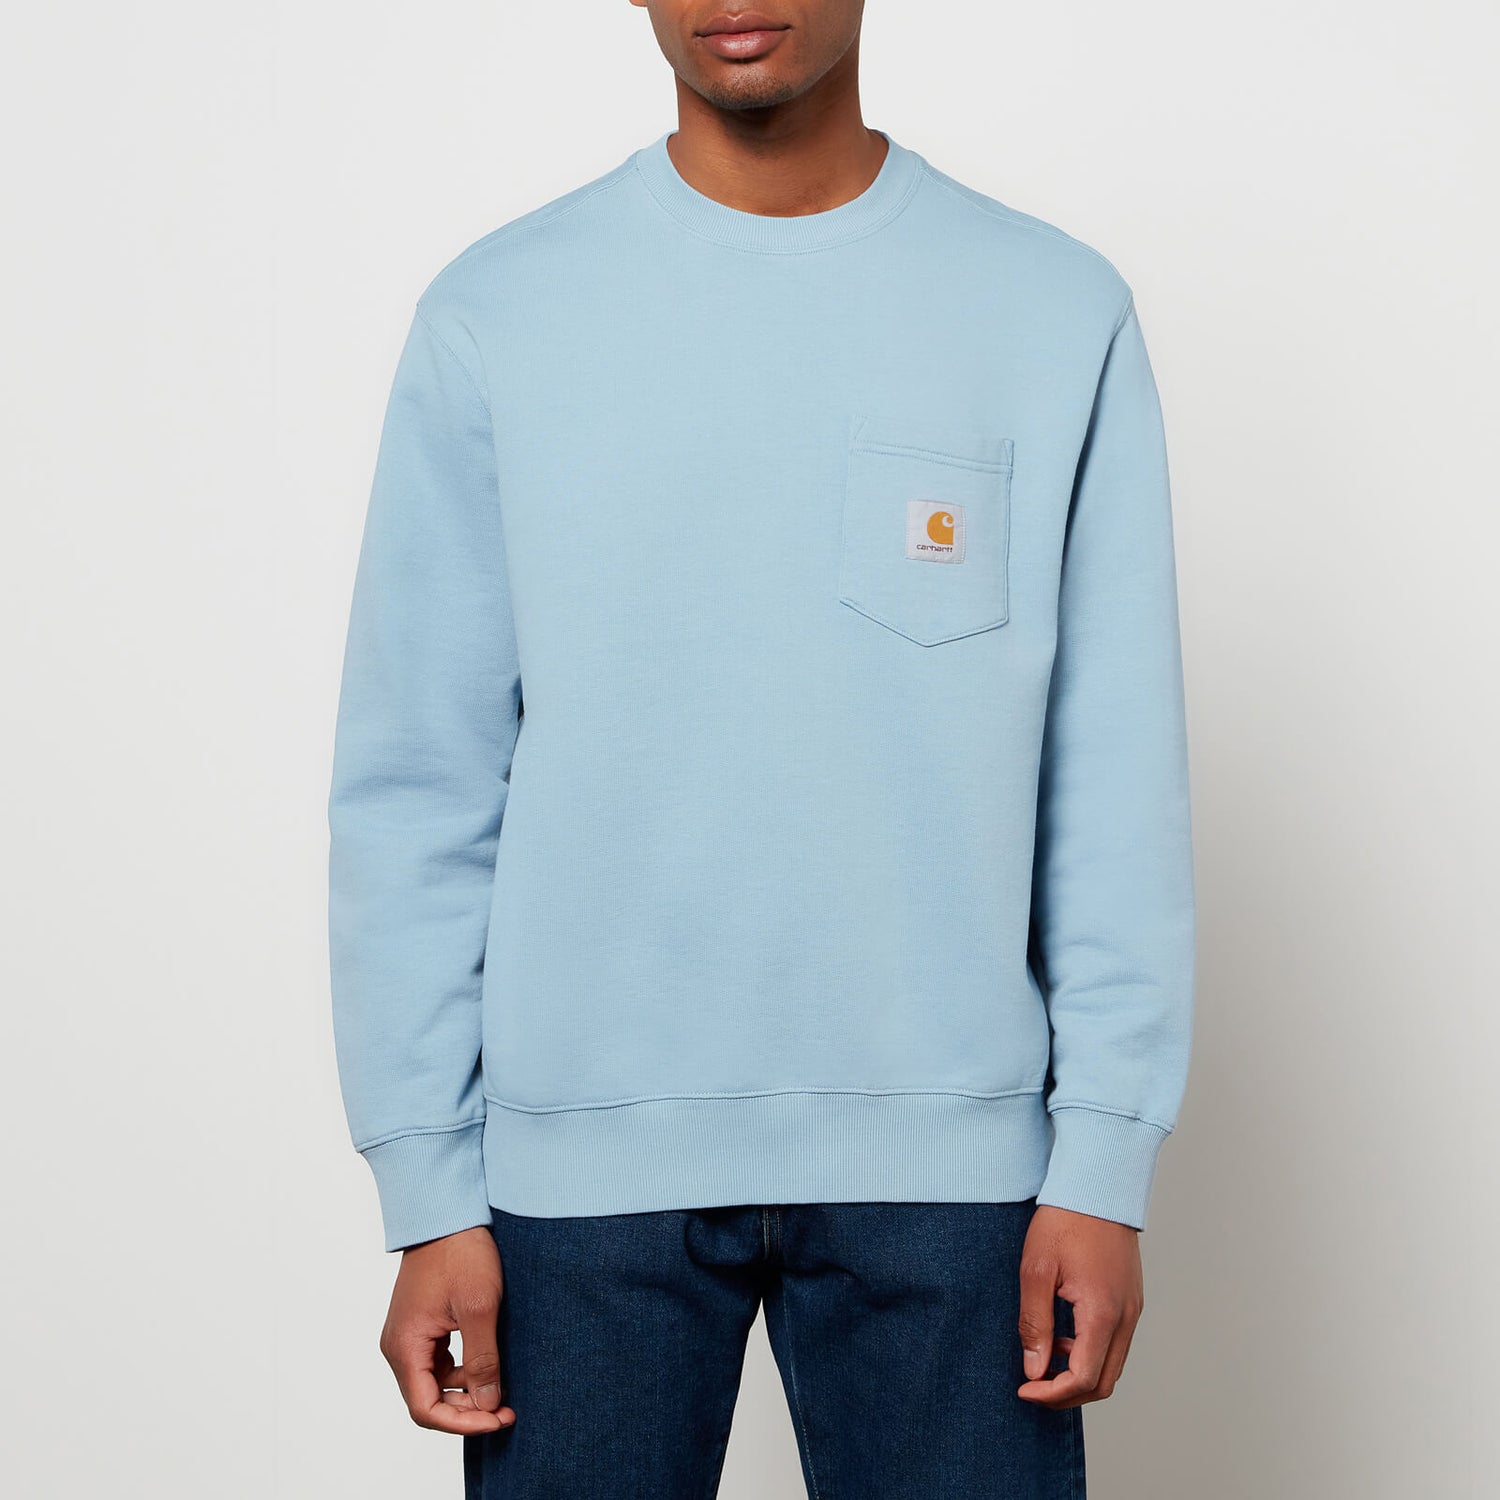 Carhartt WIP Men's Pocket Sweatshirt - Frosted Blue - S